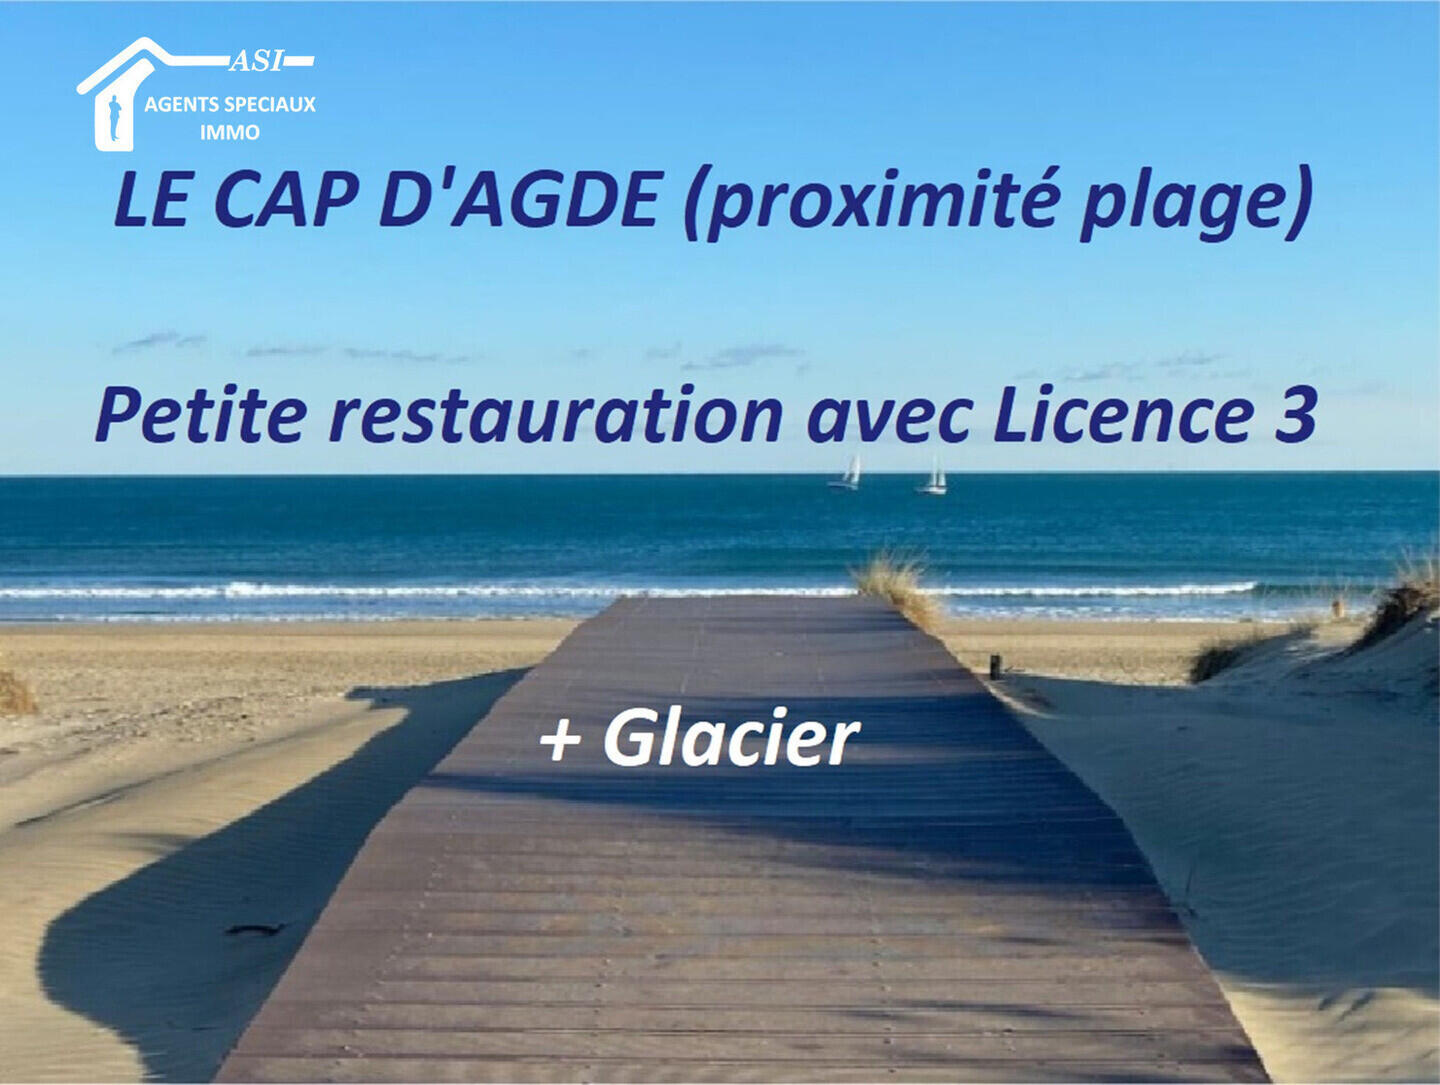 Vente restauration rapide et glacier au Cap d'Agde